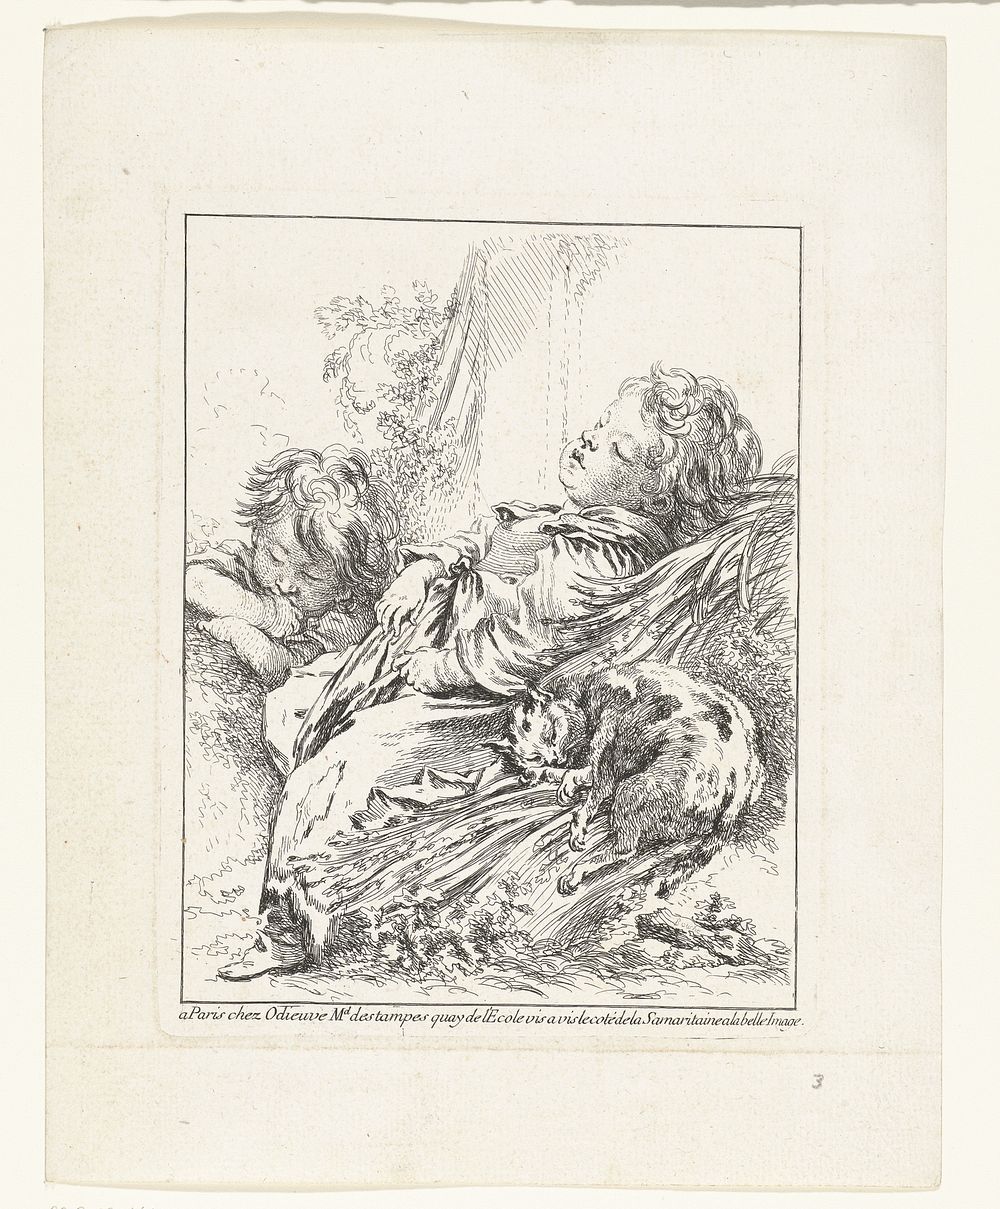 De slaap (1730 - 1740) by François Boucher, François Boucher and Michel Odieuvre